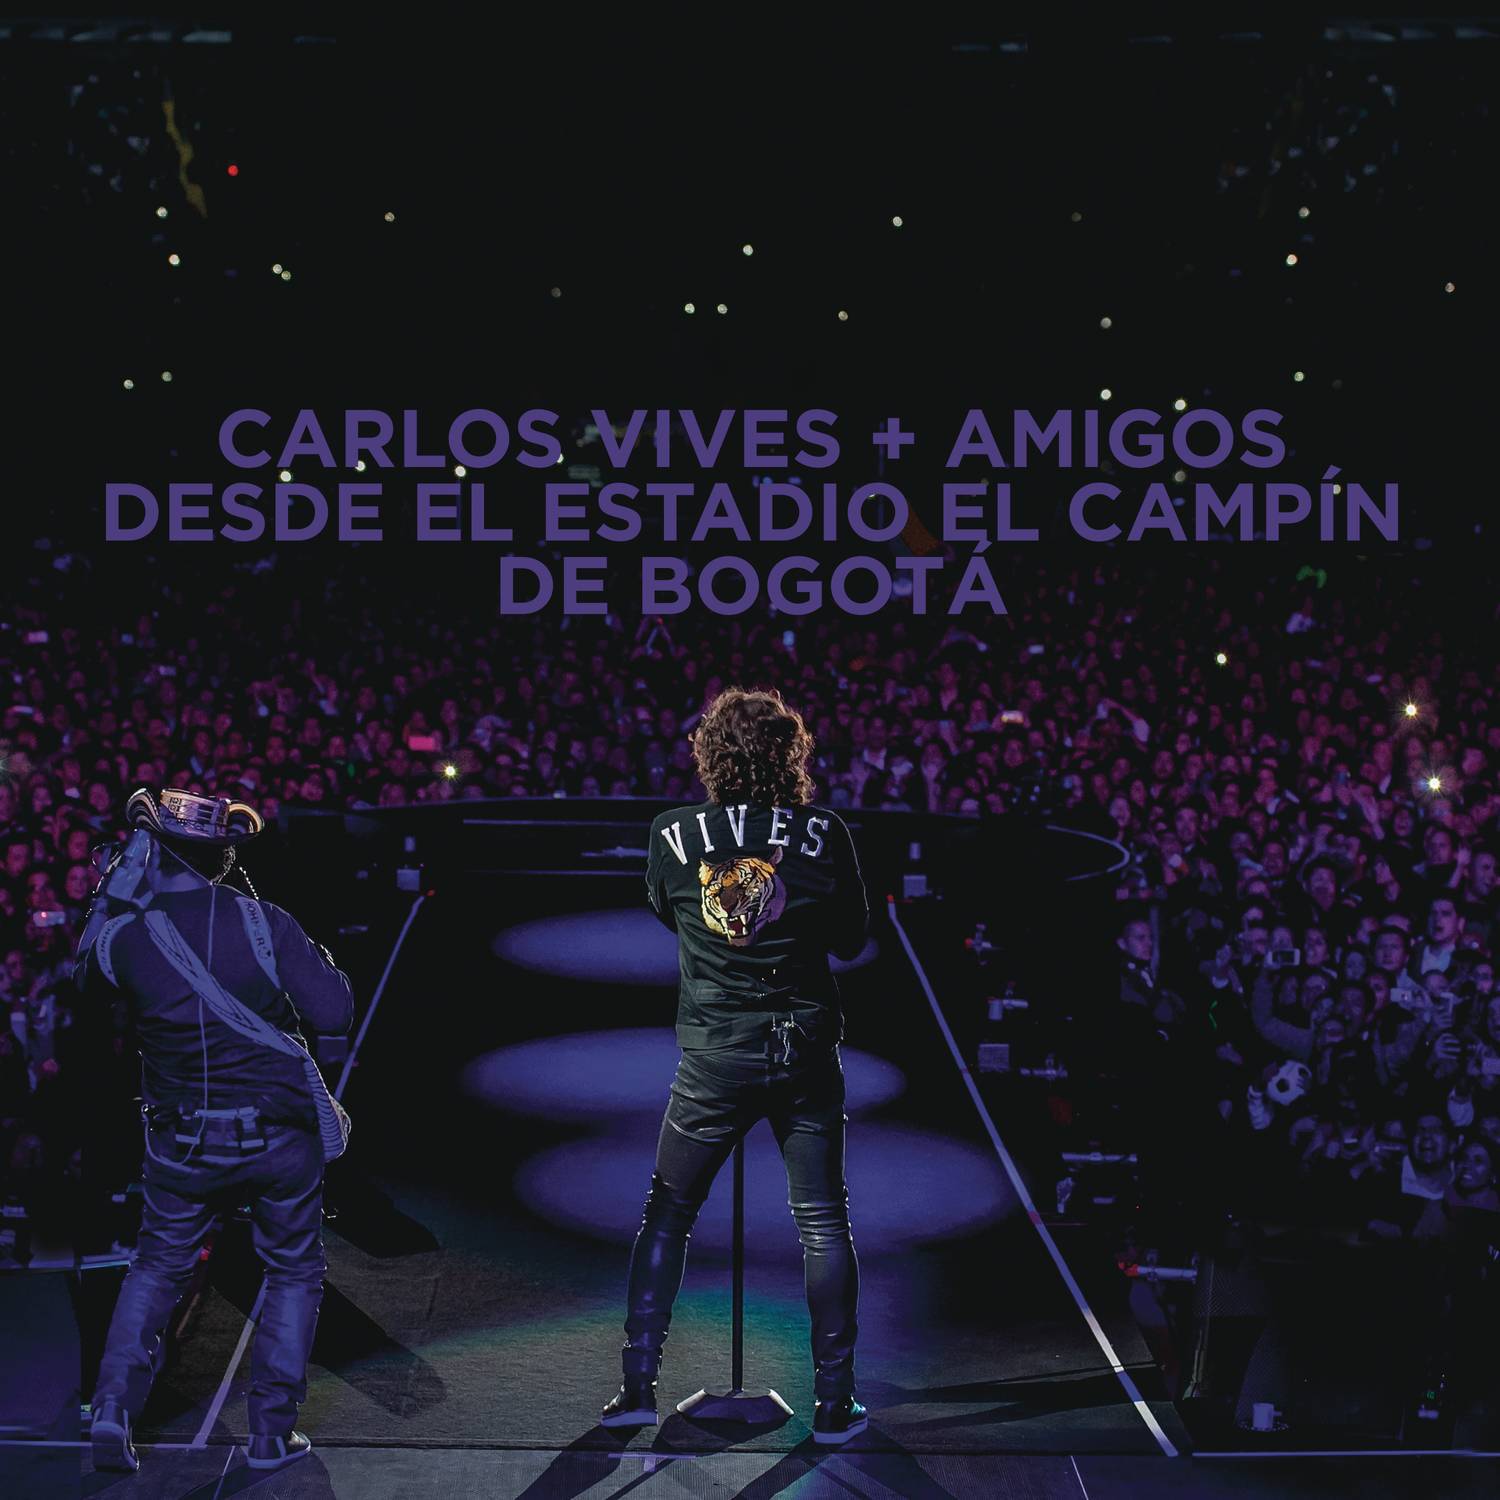 Carlos Vives + Amigos Desde el Estadio El Campín de Bogotá专辑